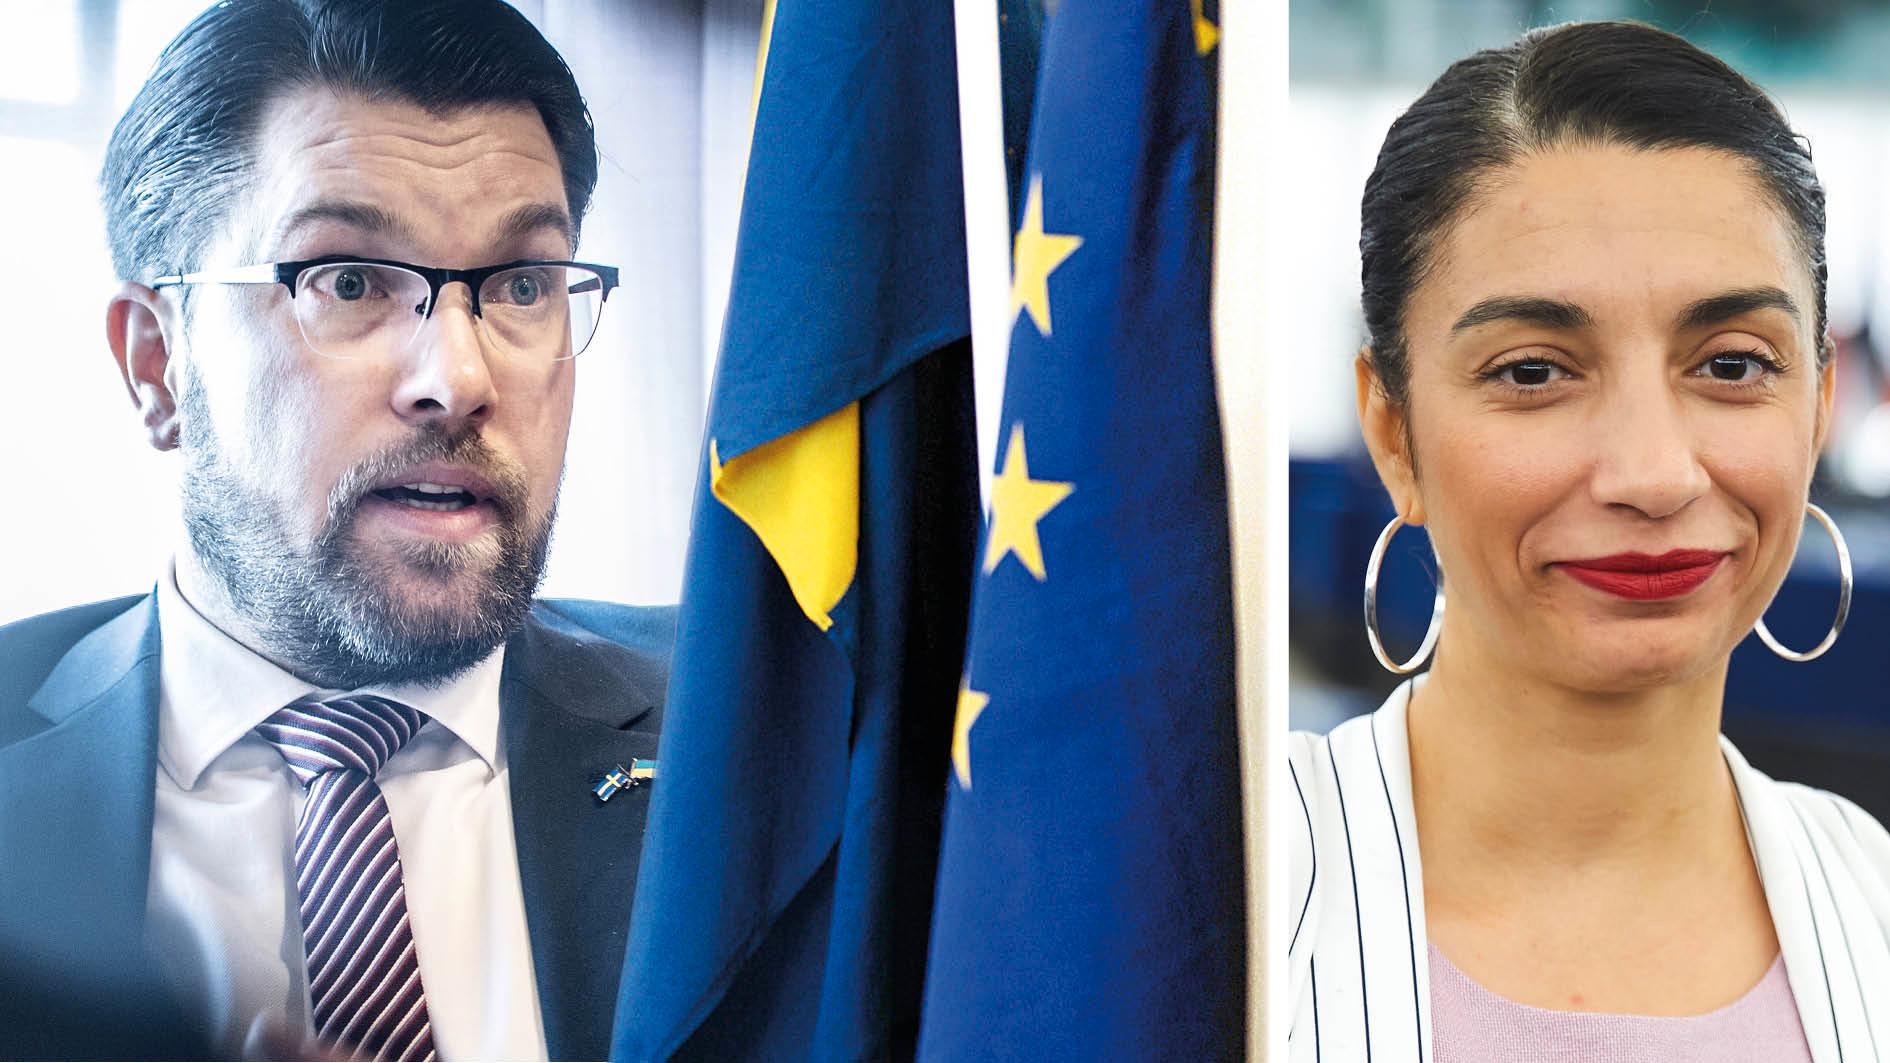 Sveriges tar snart över ordförandeskapet i EU. Att vi ska representeras av en regering med SD i framsätet kan få hissnande konsekvenser för Europa, skriver Evin Incir.